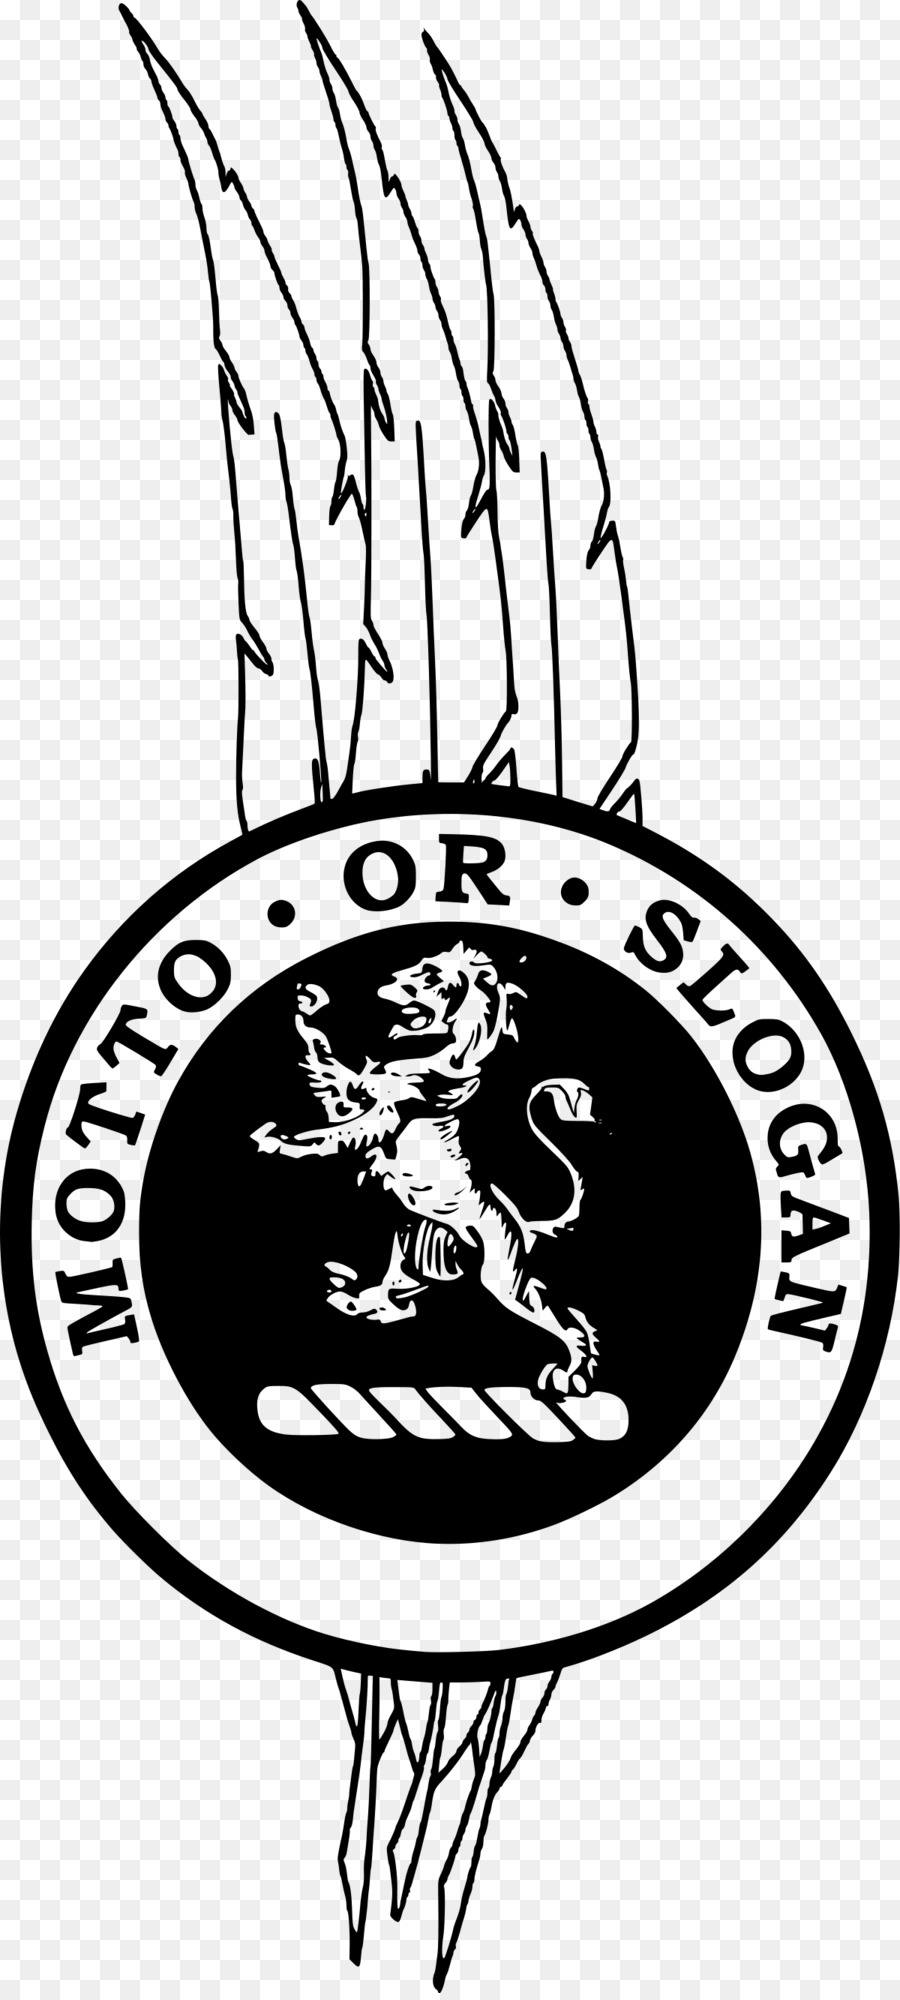 Scozia stemma distintivo del clan Scozzese capo - cresta